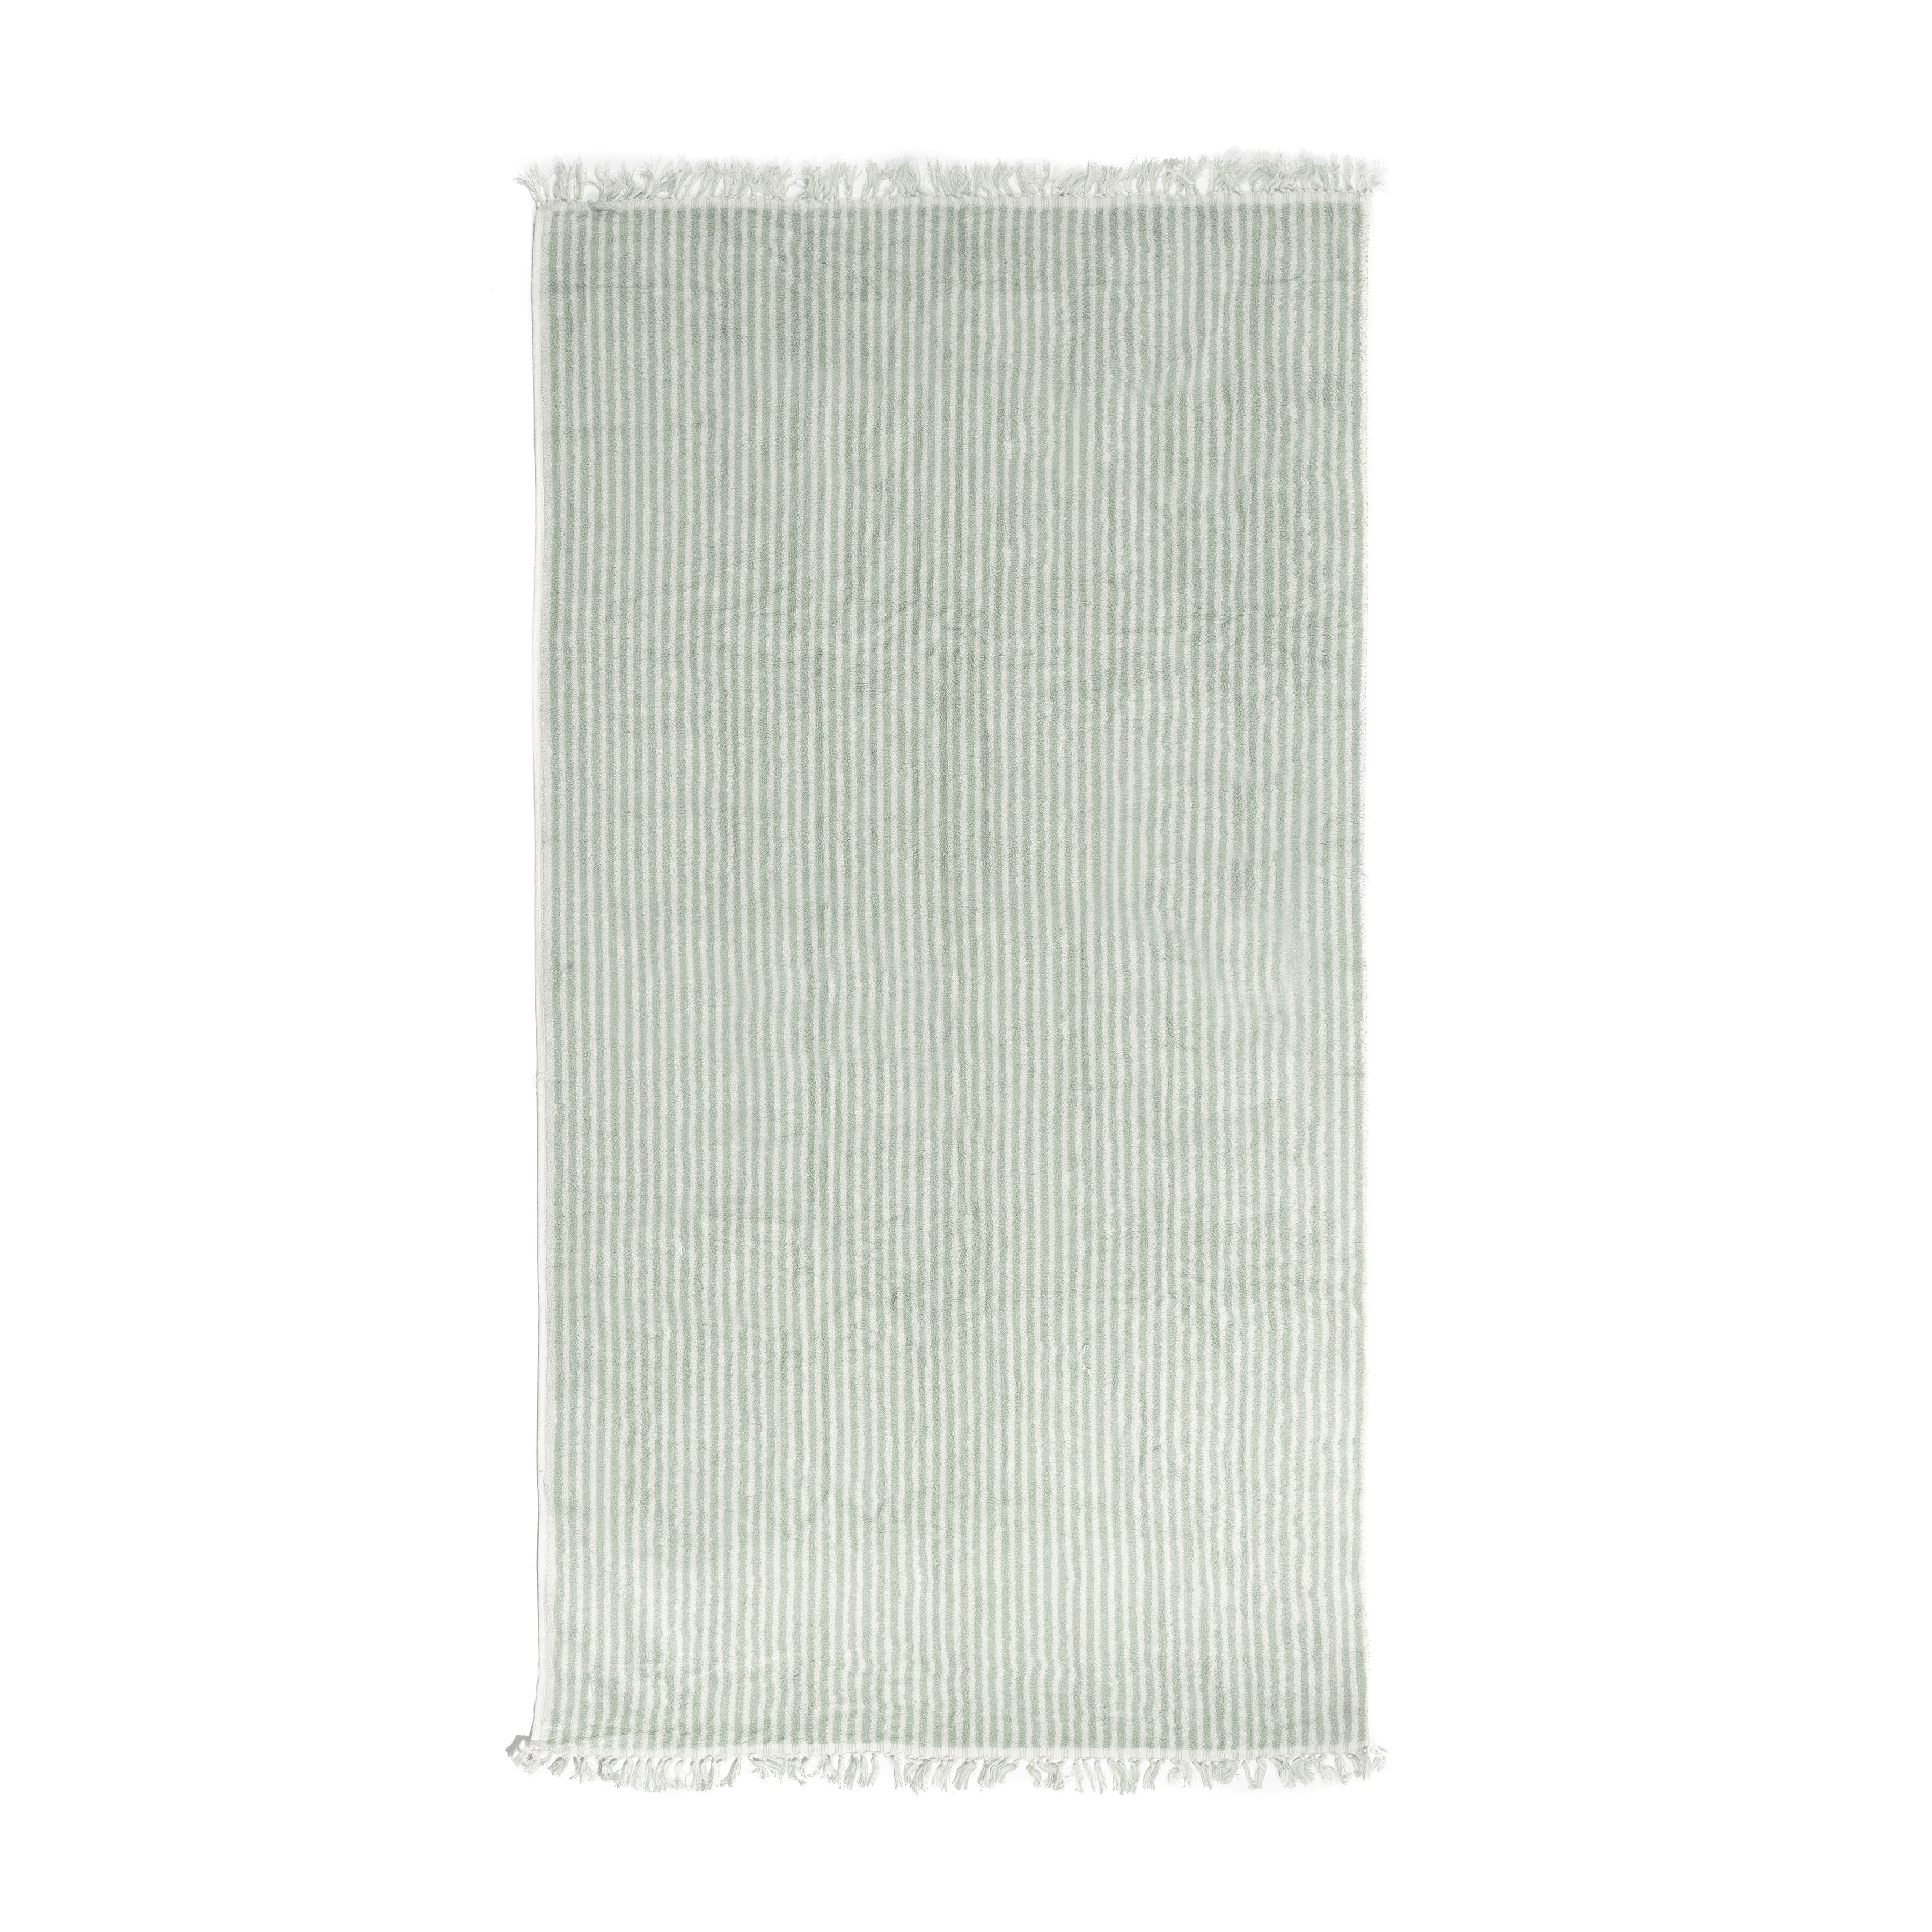 The Beach Towel - Lauren's Sage Stripe